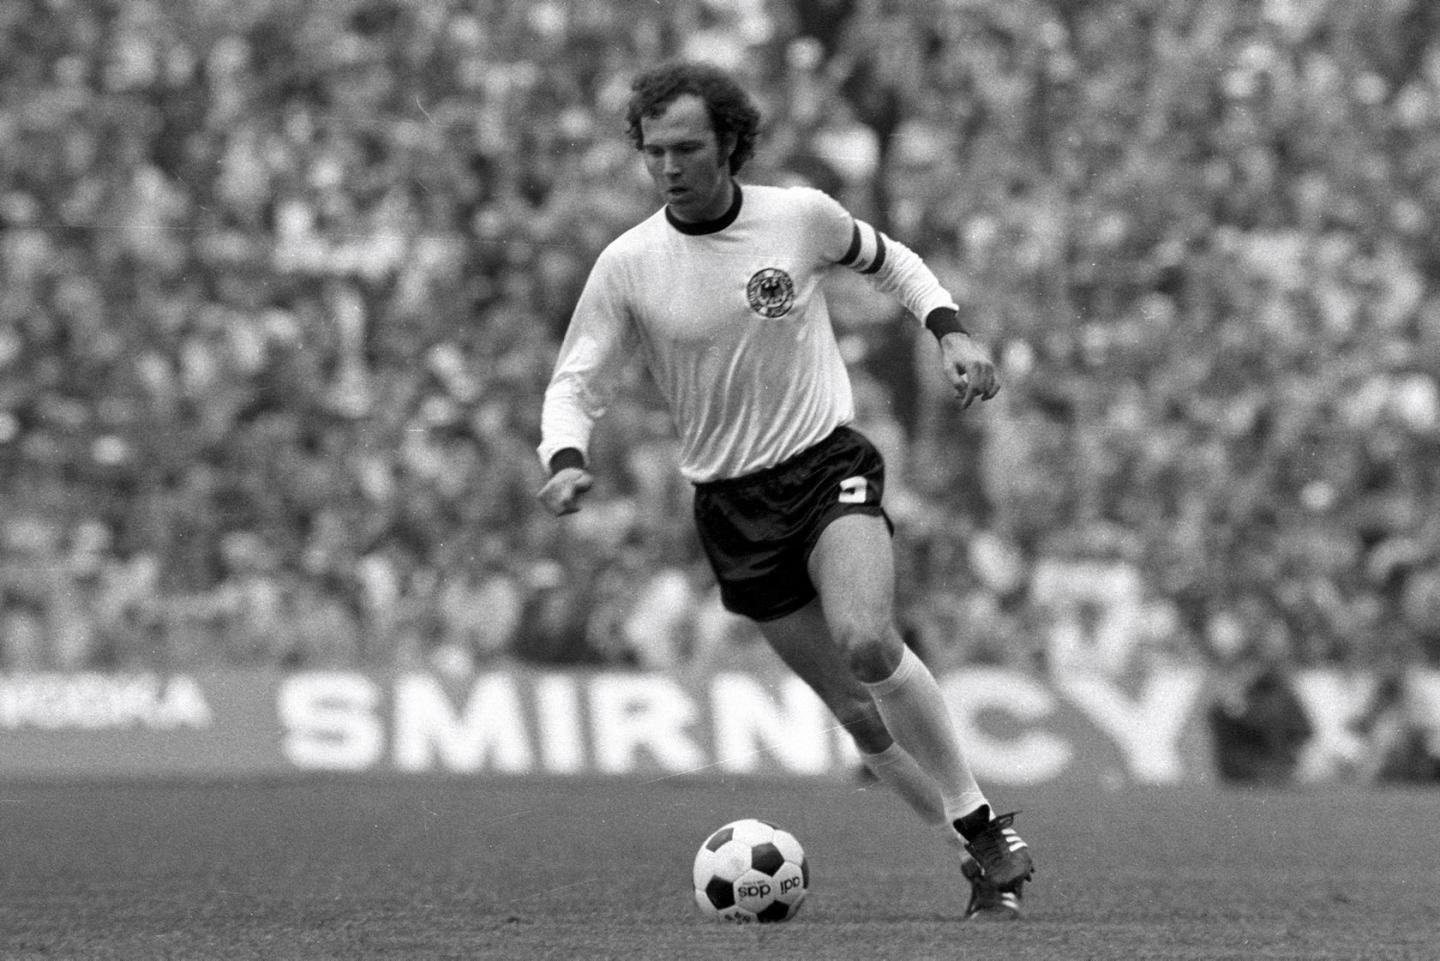 “Hoàng đế” Beckenbauer đã làm gì để hạ gục “Thánh” Cruyff tại World Cup 1974? - Ảnh 1.